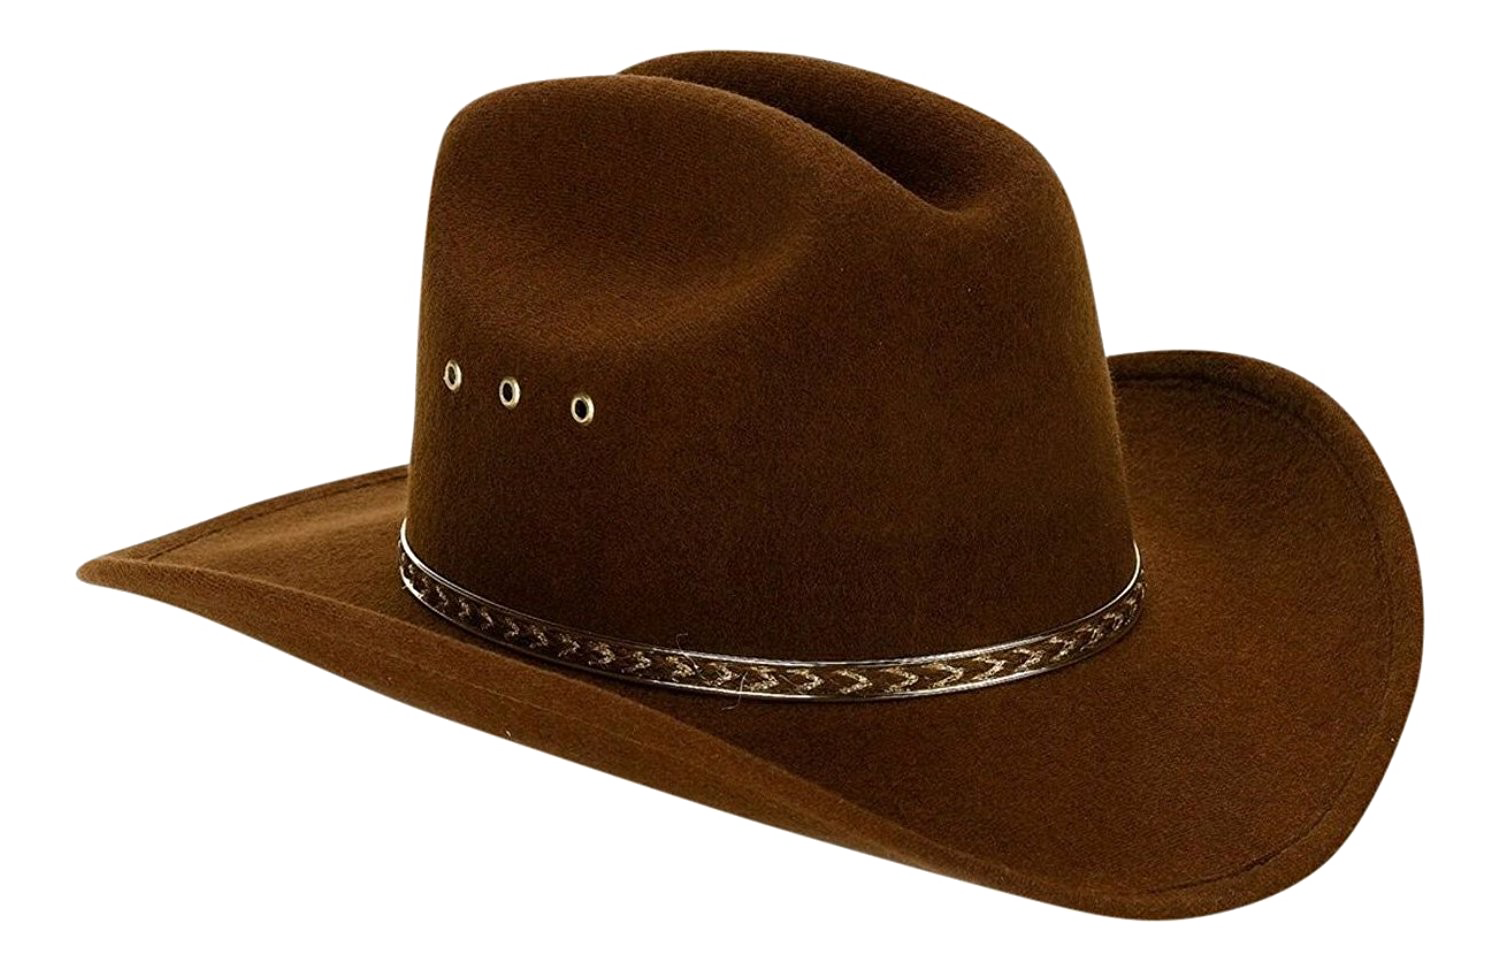 Imagen Transparente del sombrero de vaquero